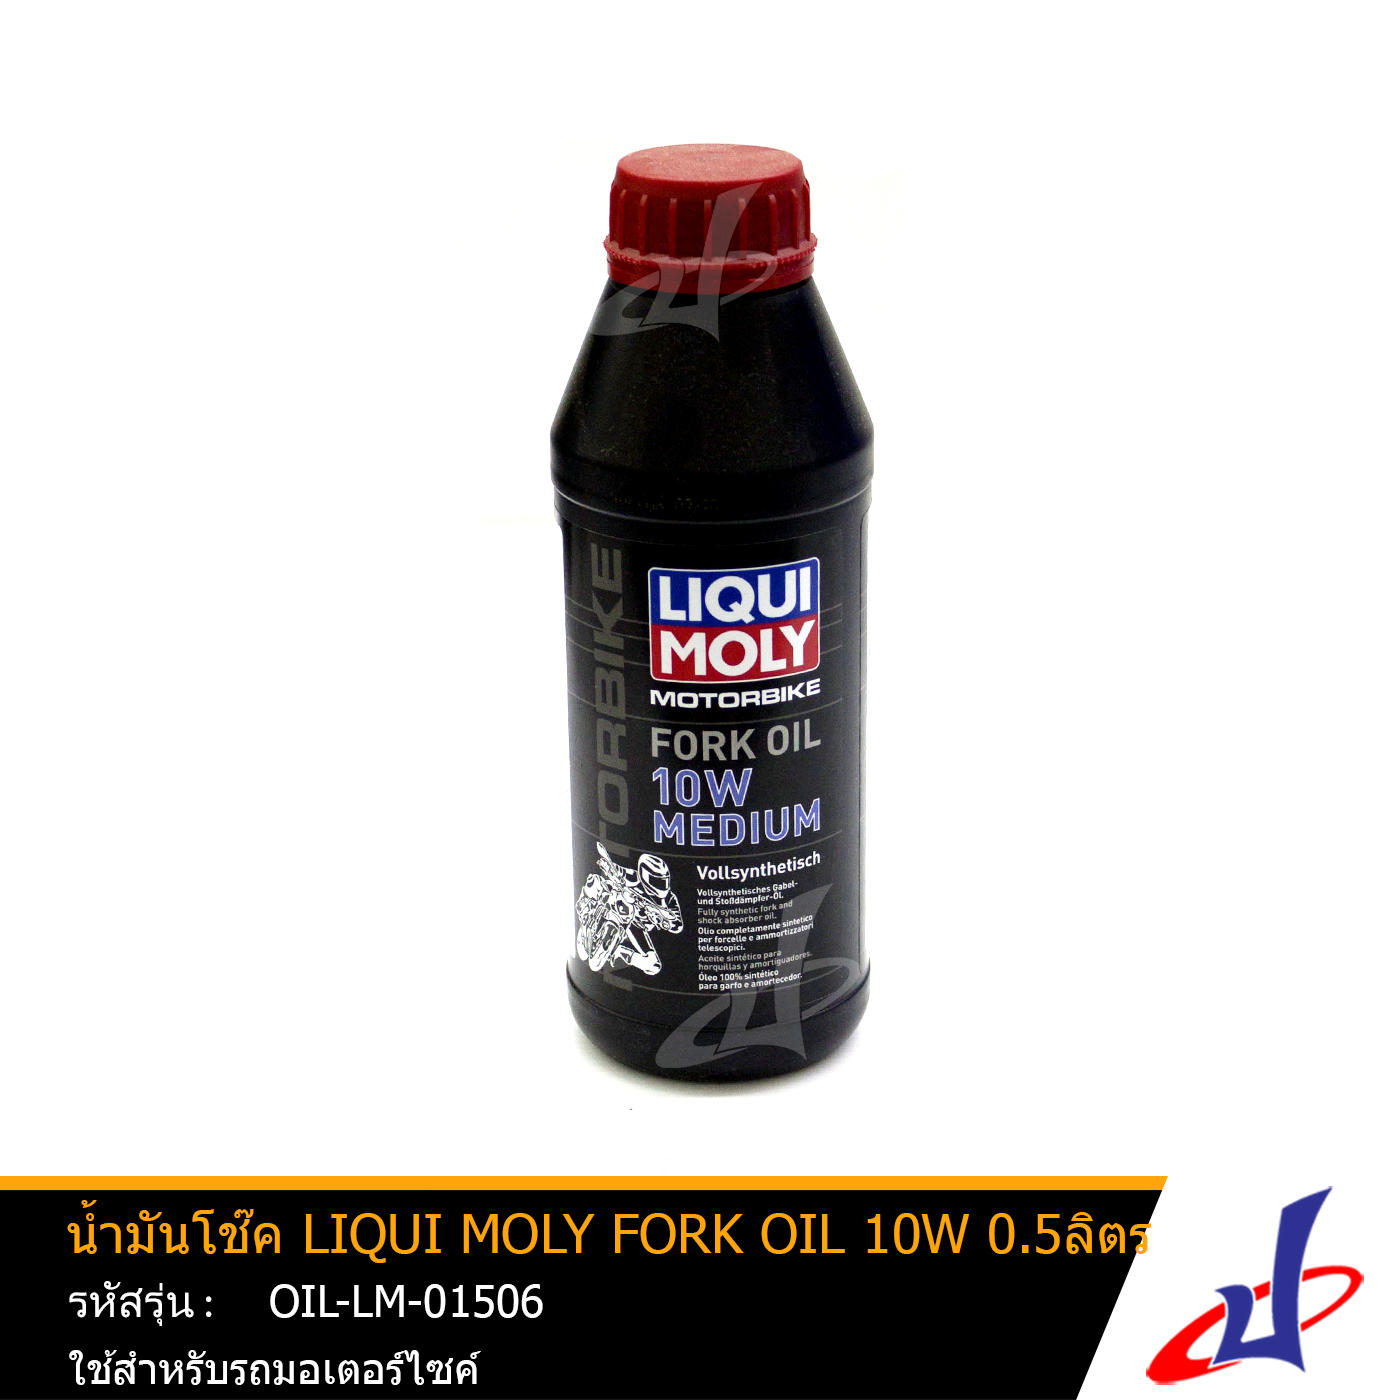 น้ำมันโช้ค LIQUI MOLY FORK OIL 10W ขนาด 500มล. น้ำมันโช้คคุณภาพสังเคราะห์แท้ มีส่วนผสมของสารที่ช่วยป้องกันการเกิดฟองและโช้คแข็งตัว (OIL-LM-01506)